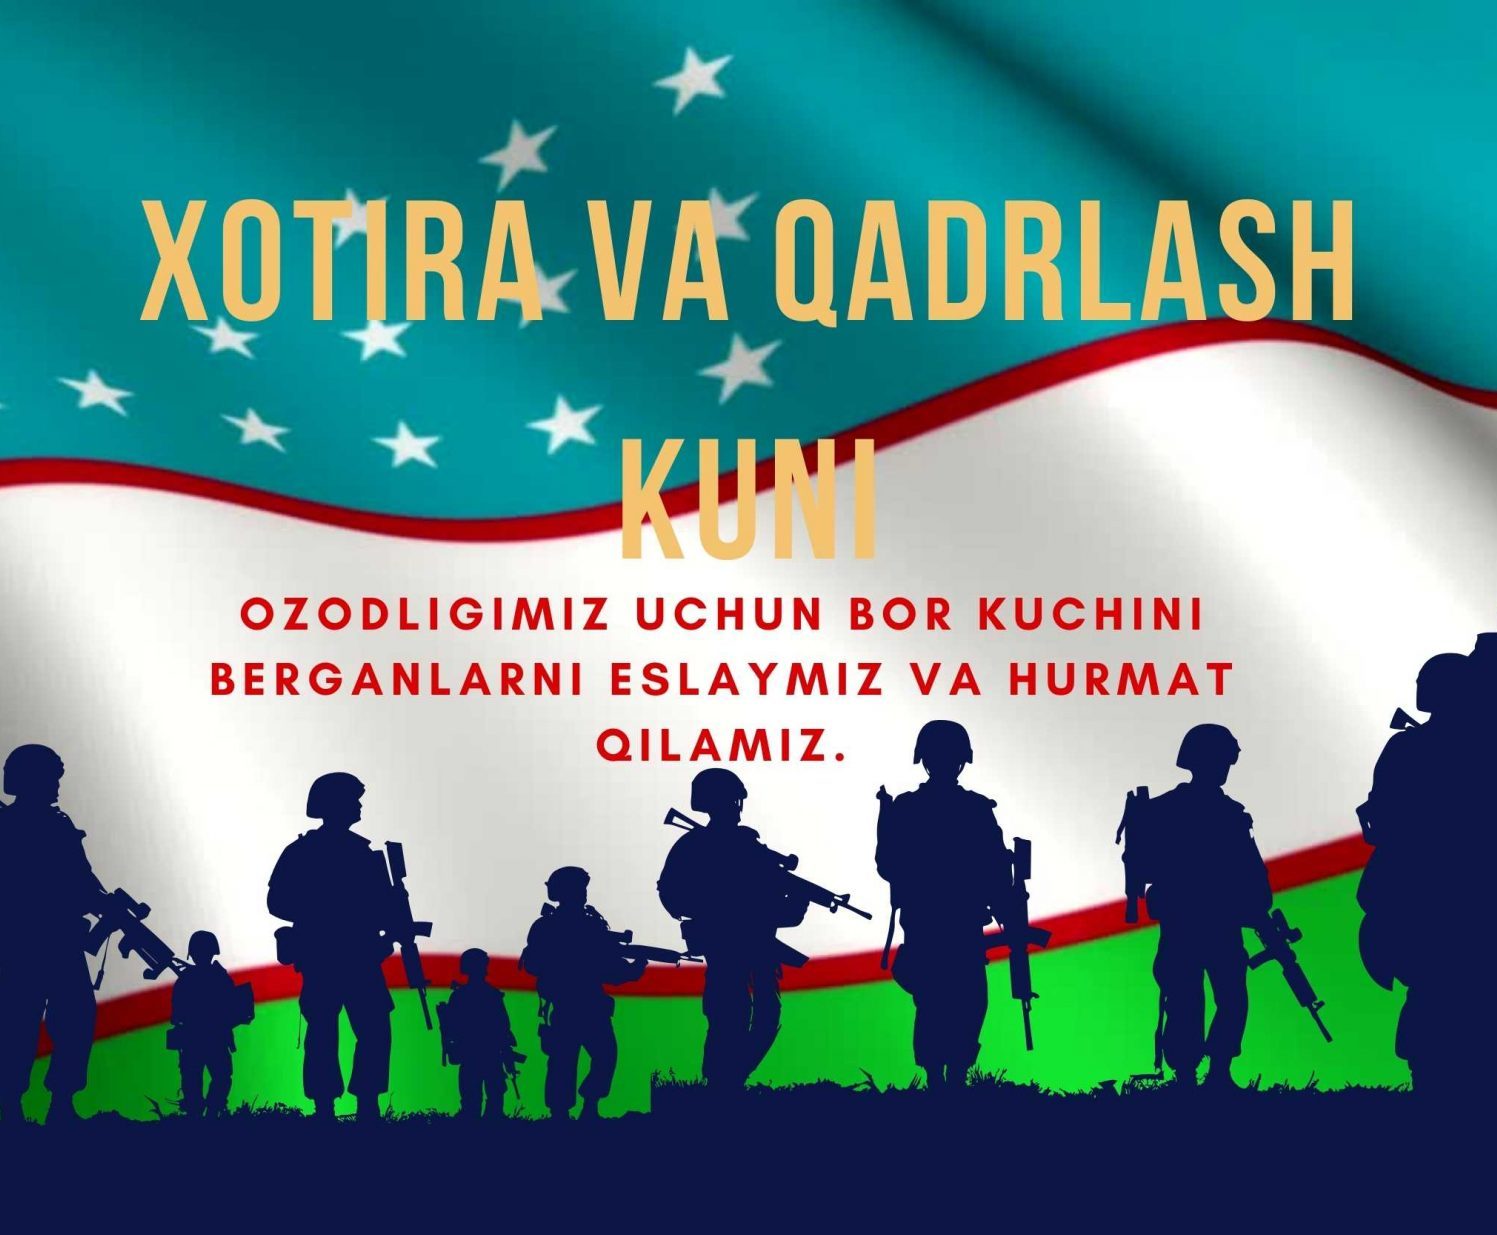 9 мая Узбекистан отмечает День Памяти и Почестей